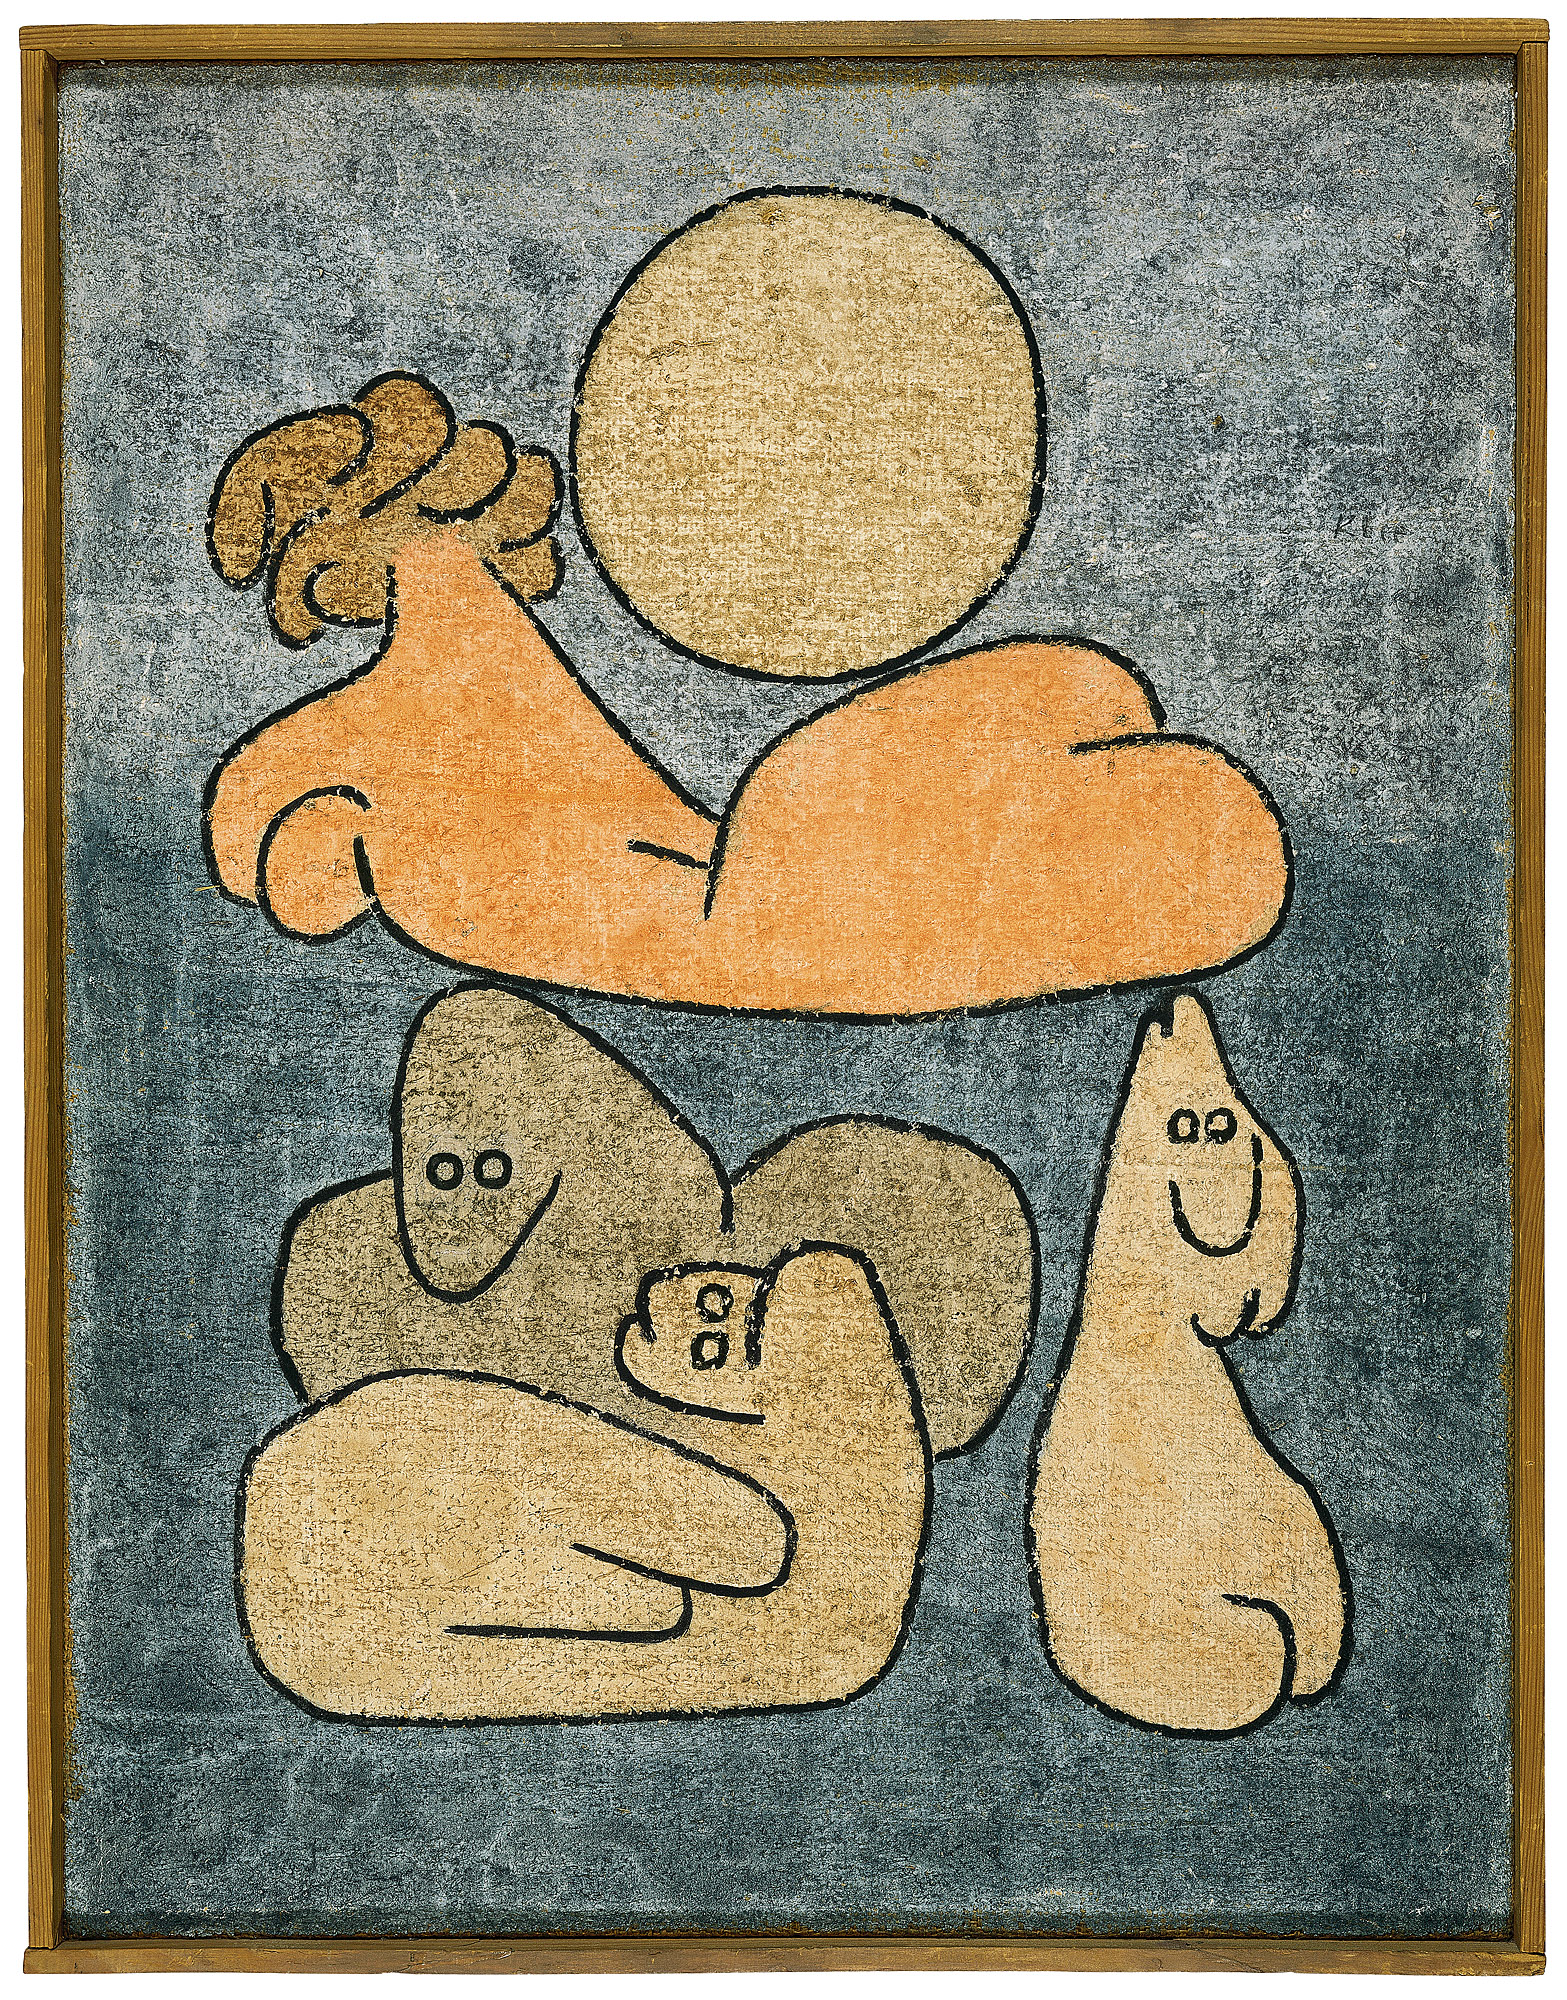 धड़ और परिजनों (पूर्णिमा पर) by Paul Klee - १९३९ - ६५ x ५० से। मी 